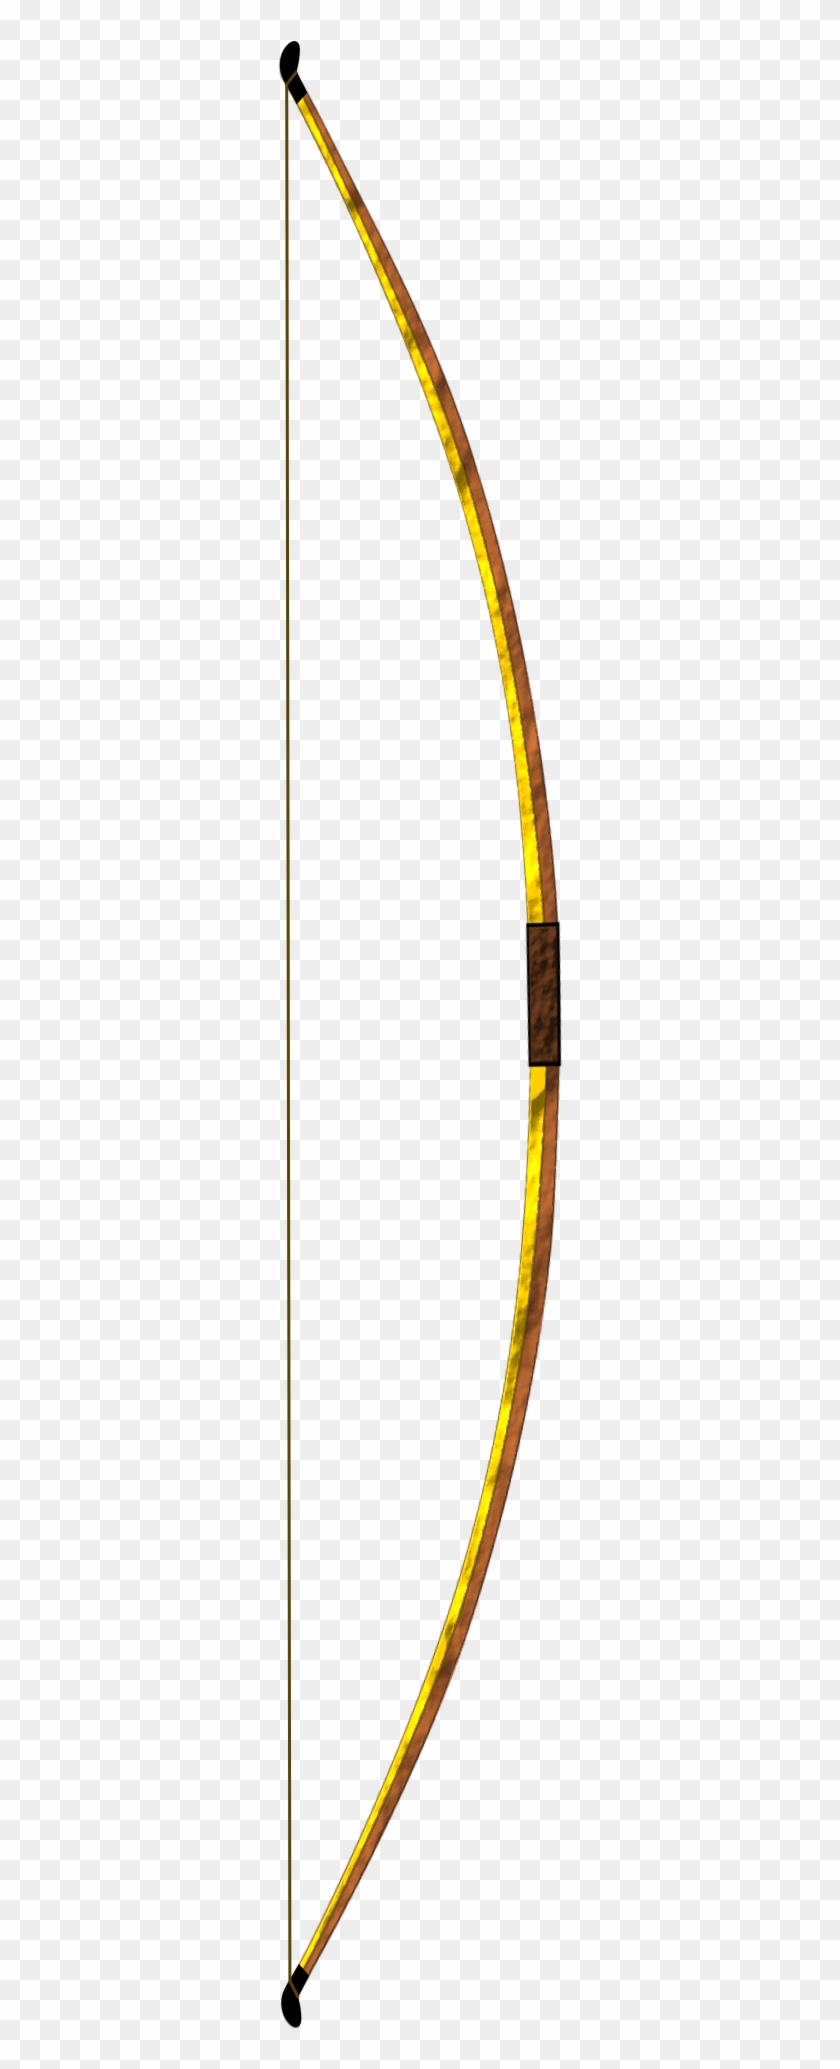 Bow And Arrow English Longbow Archery Clip Art - Bow And Arrow English Longbow Archery Clip Art #787533